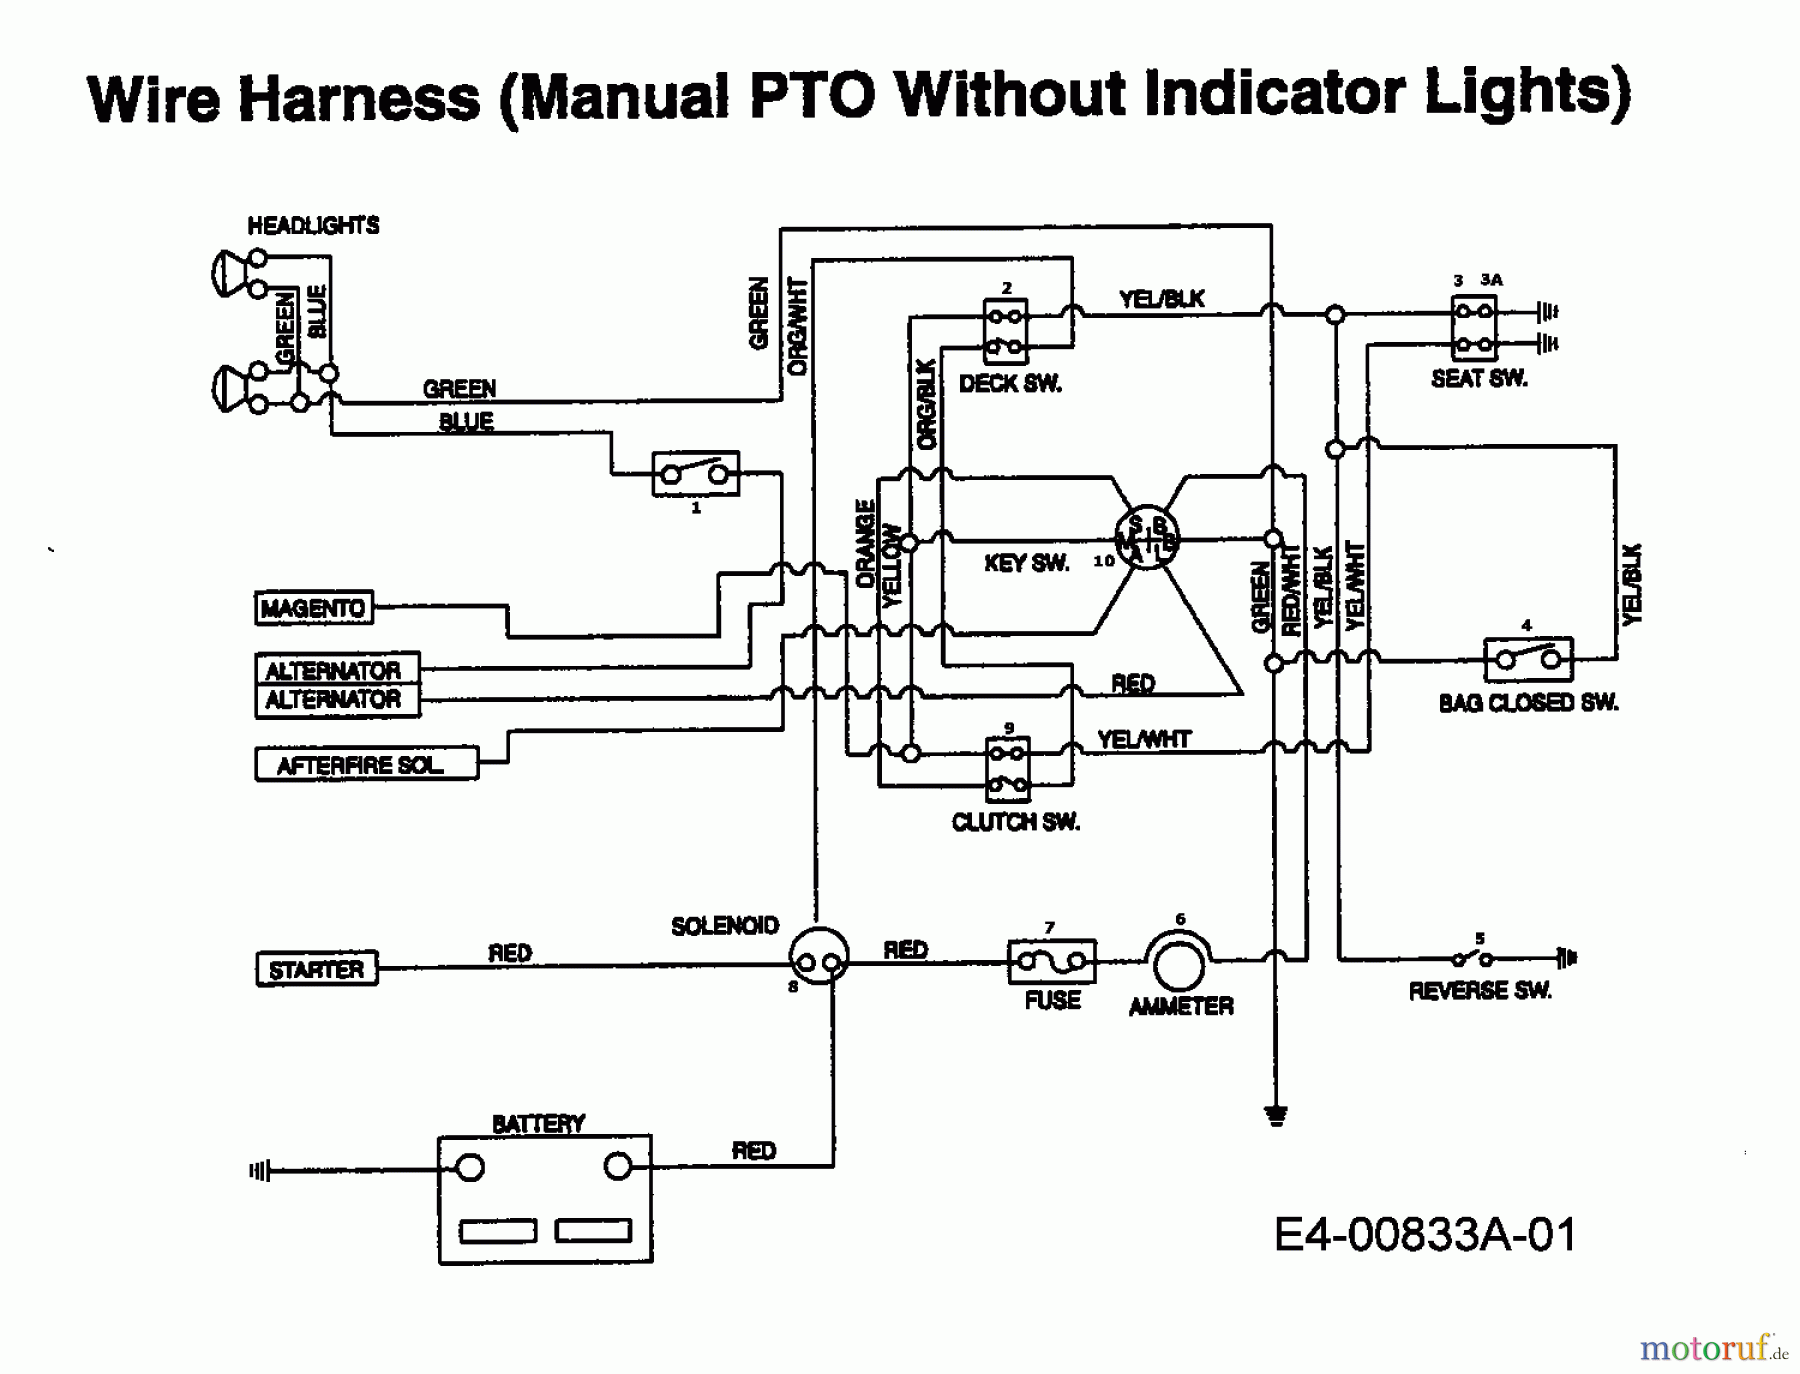  MTD Rasentraktoren EH 155 13AD795N678  (1997) Schaltplan ohne Kontrolleuchten